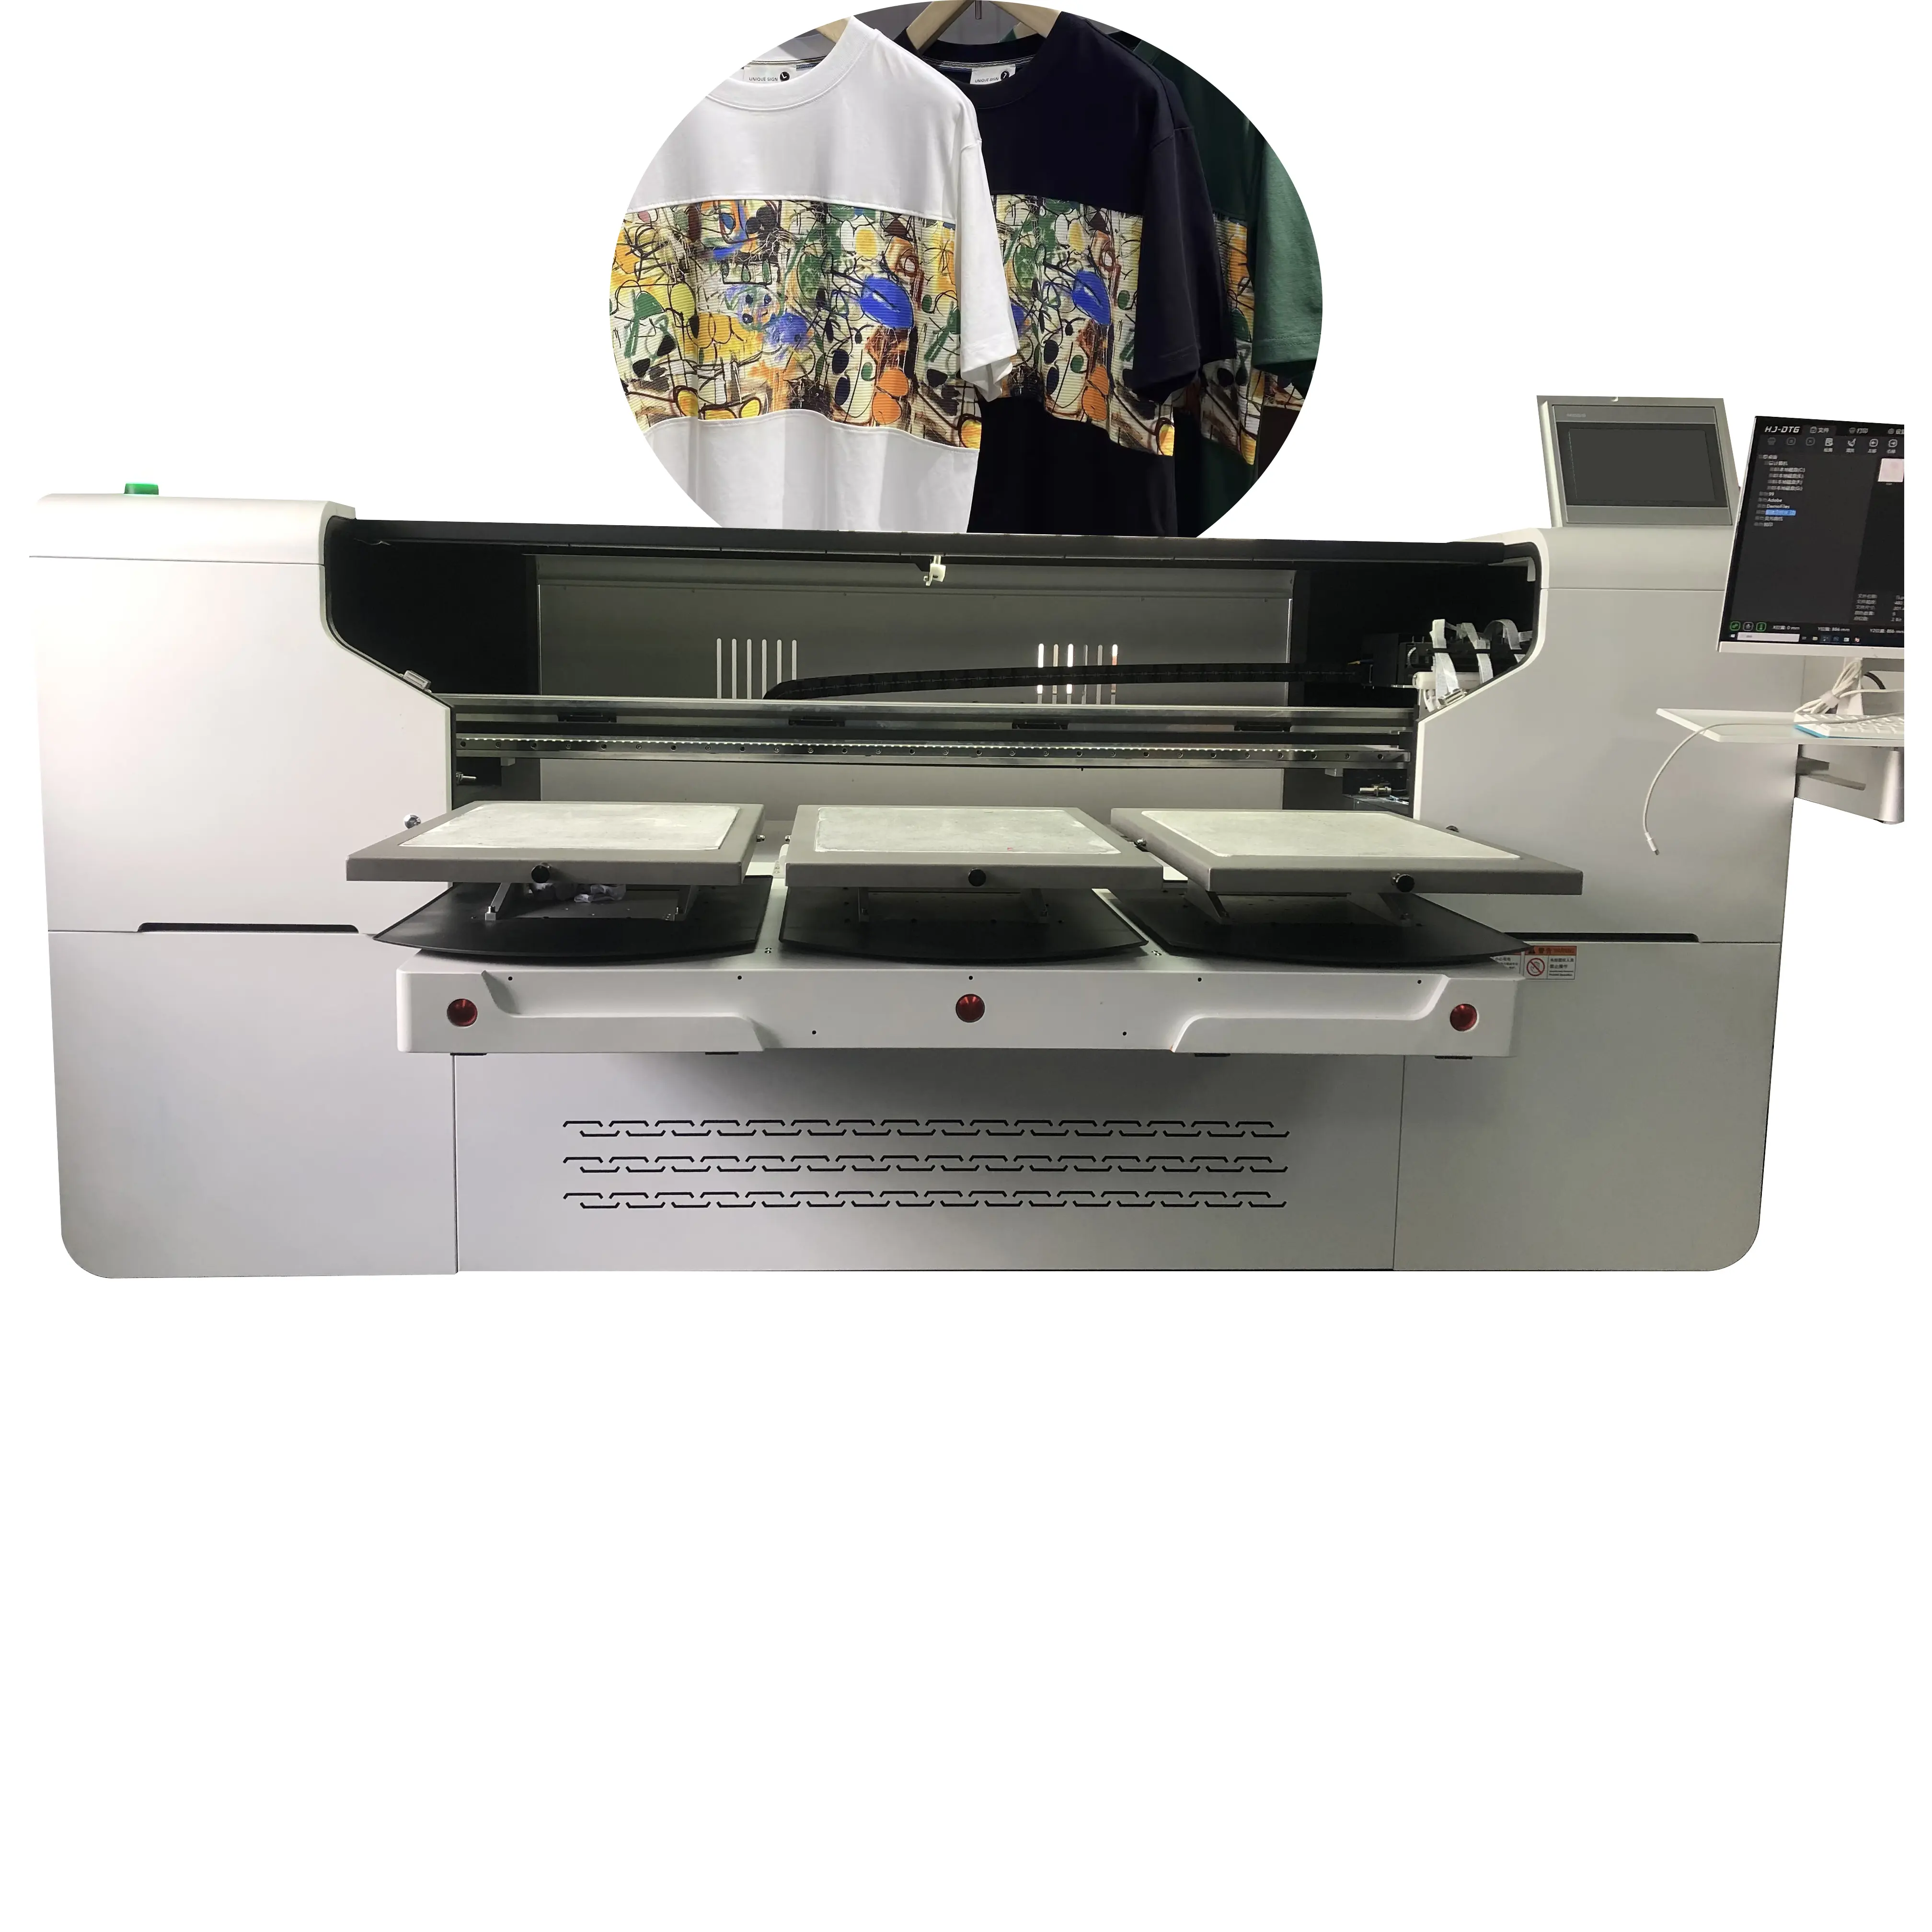 Impresora automática de camisetas de inyección de tinta Guangmei, impresora Dtg, máquina de impresión de camisetas directa a la impresora de prendas